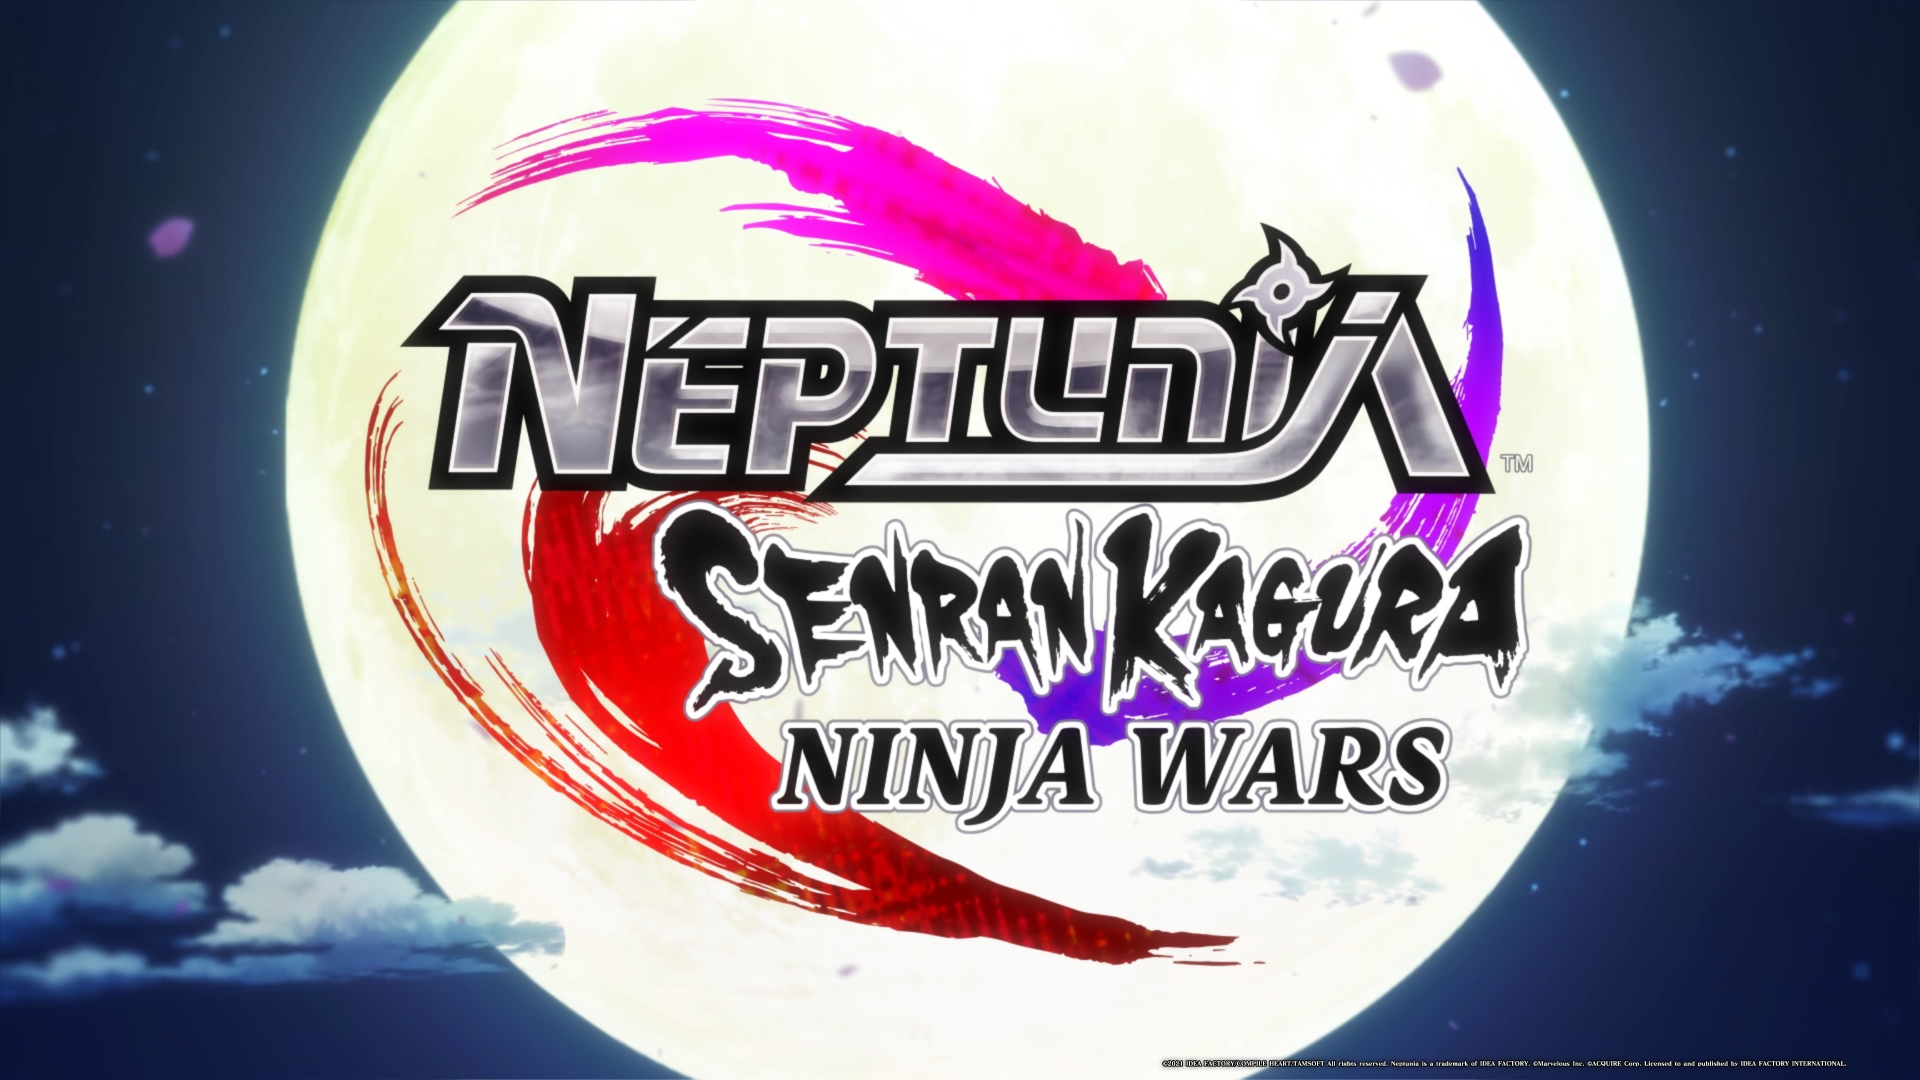 Neptunia X Senran Kagura PS4 Review #10